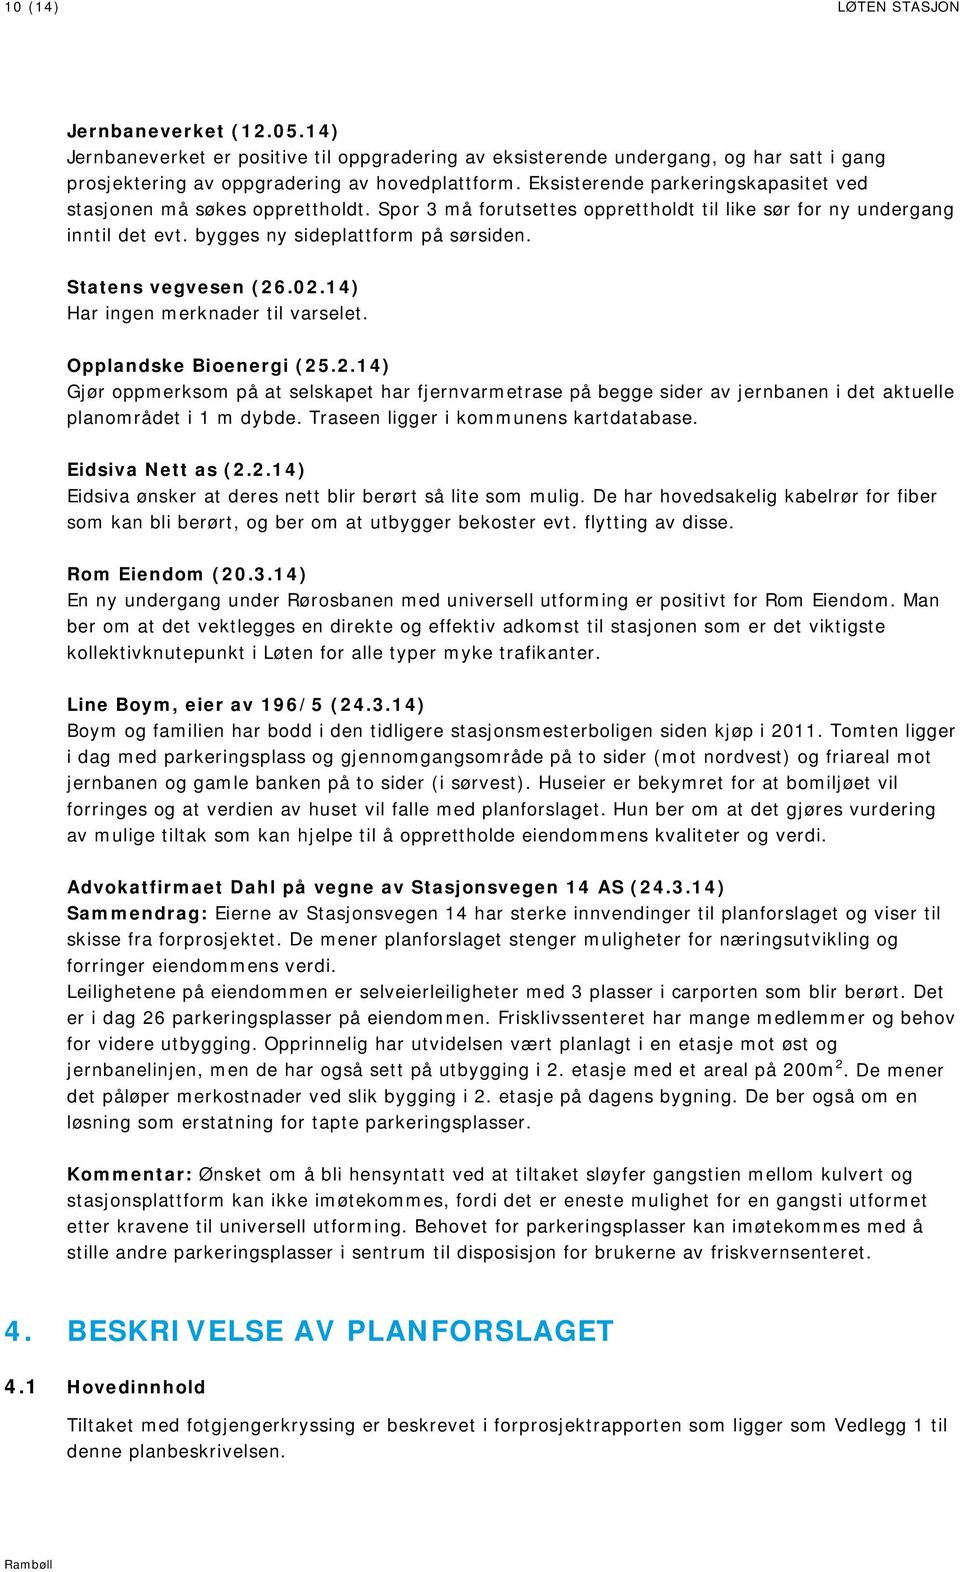 Statens vegvesen (26.02.14) Har ingen merknader til varselet. Opplandske Bioenergi (25.2.14) Gjør oppmerksom på at selskapet har fjernvarmetrase på begge sider av jernbanen i det aktuelle planområdet i 1 m dybde.